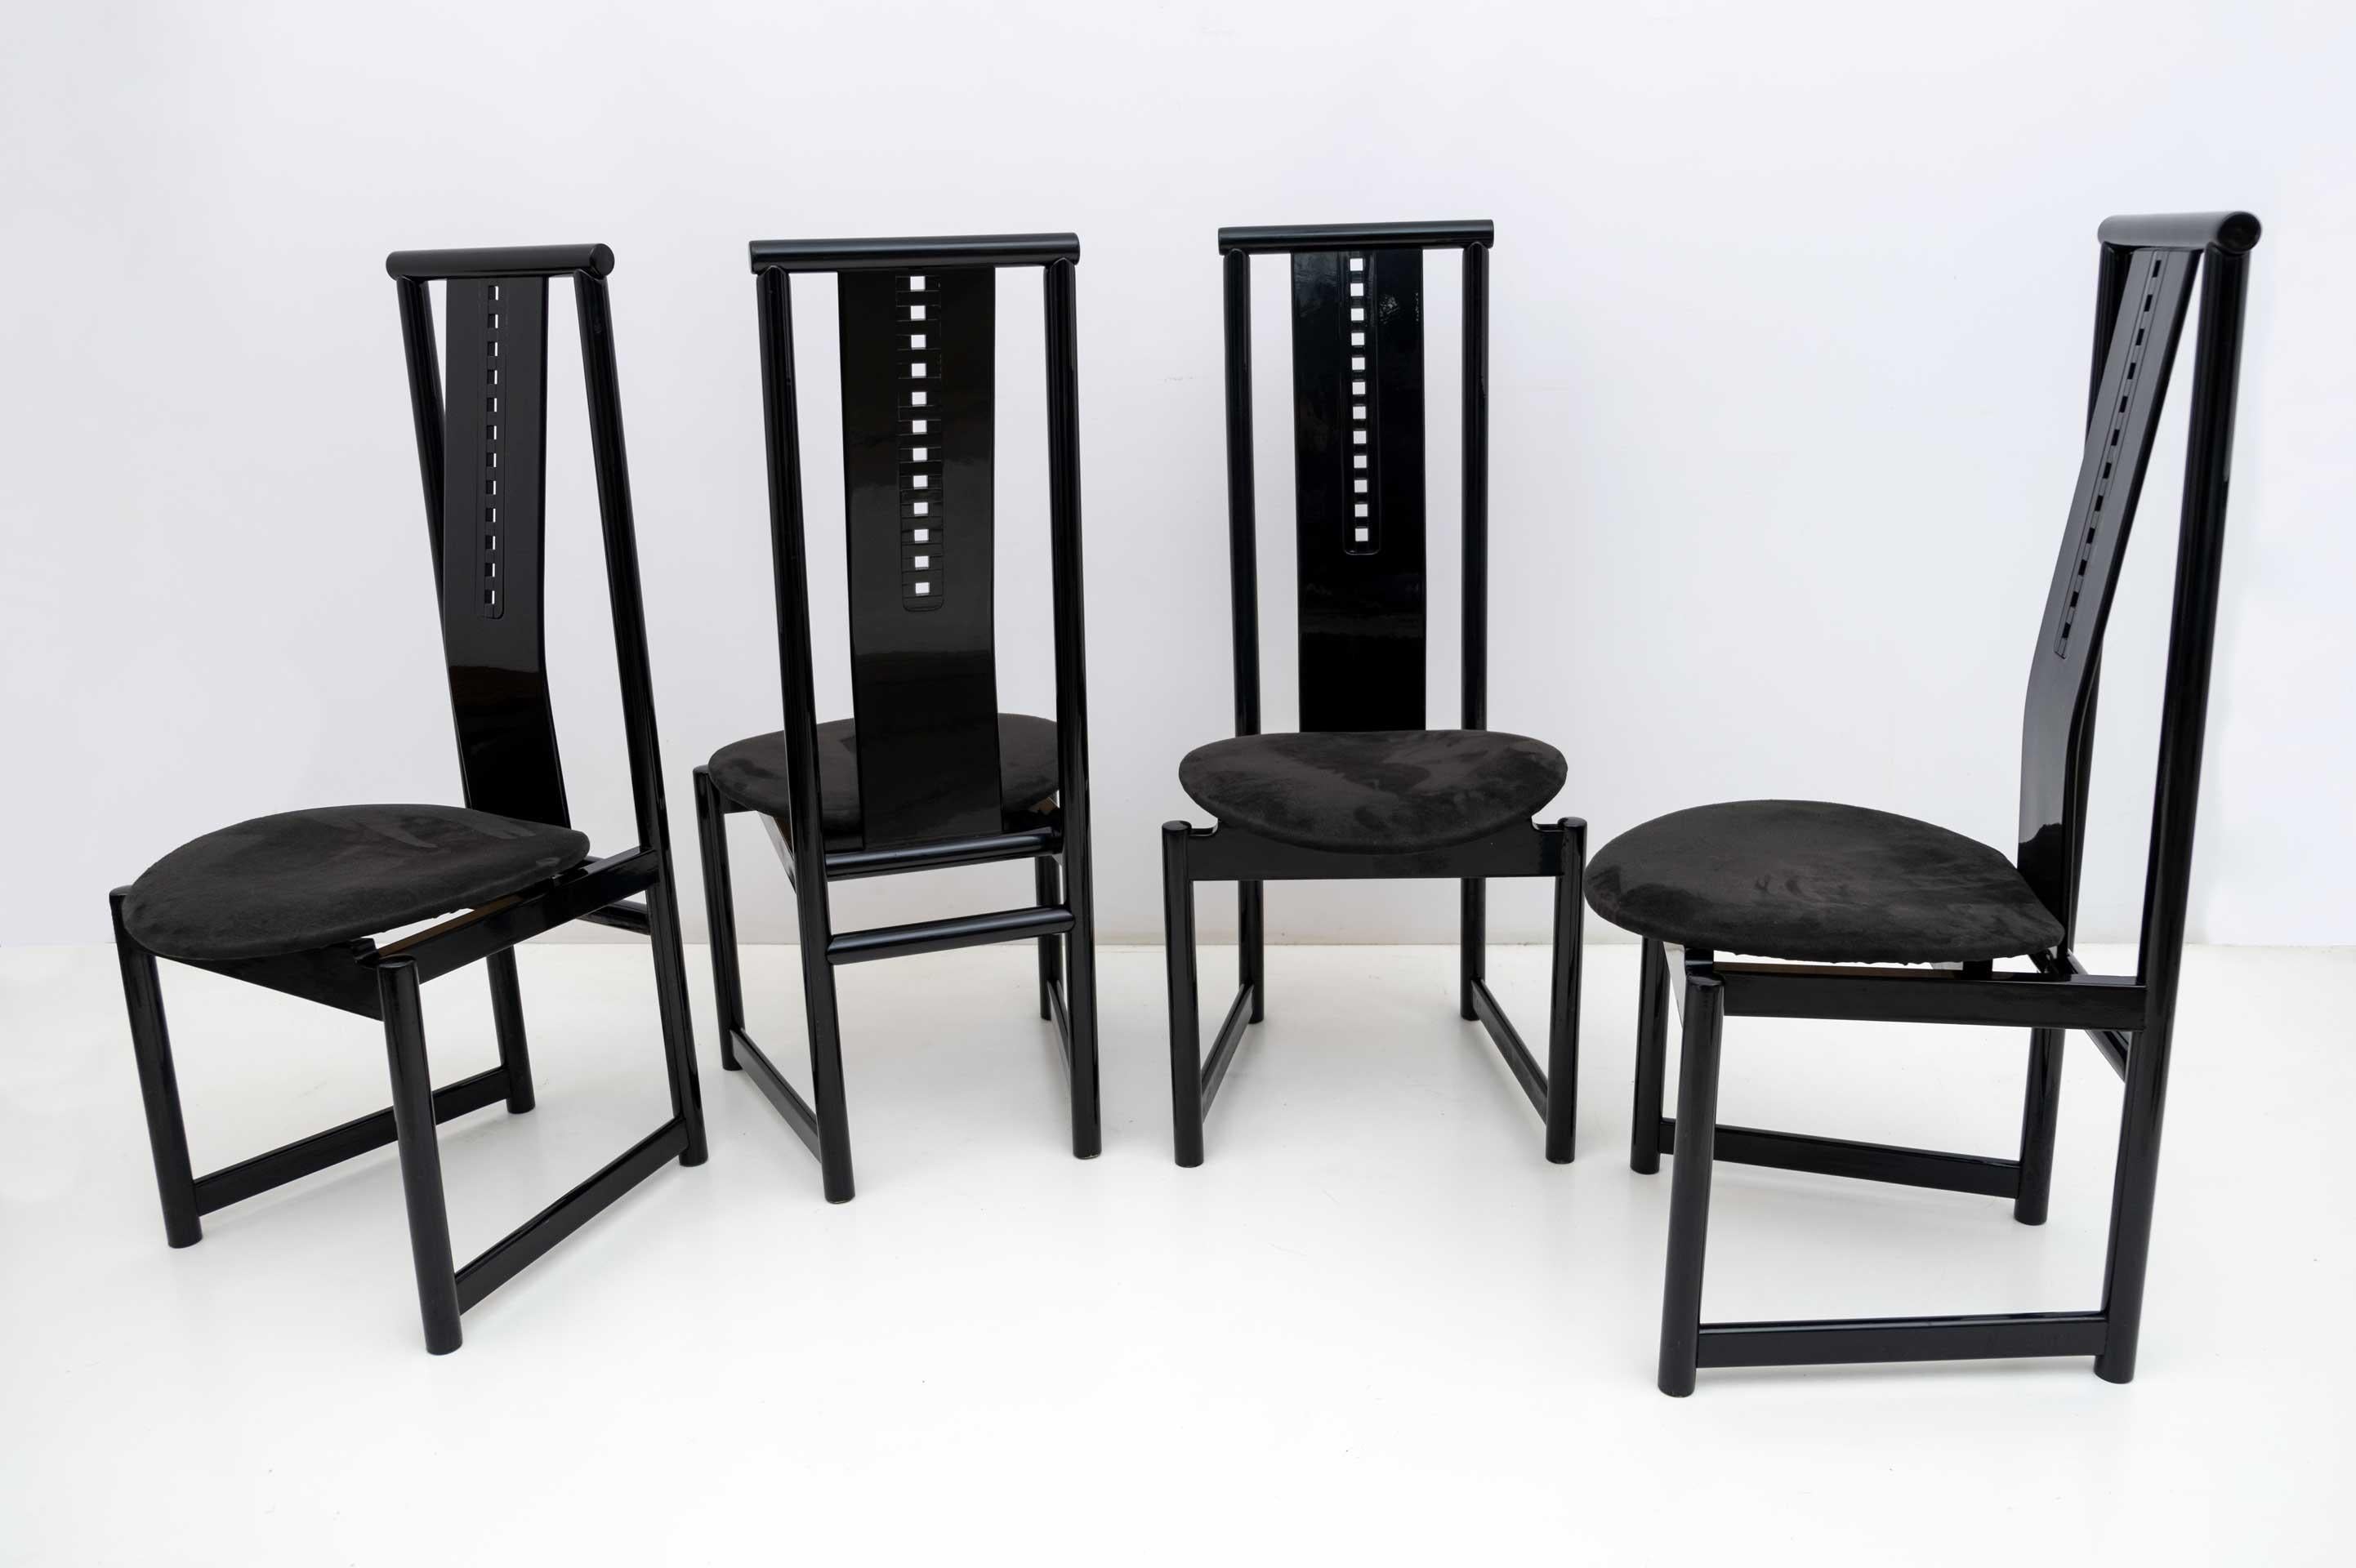 Dans le style de l'architecte écossais Charles Rennie Mackintosh. Ces quatre chaises, solidement construites en bois laqué noir, sont recouvertes d'Alcantara noir, fin des années 1970.